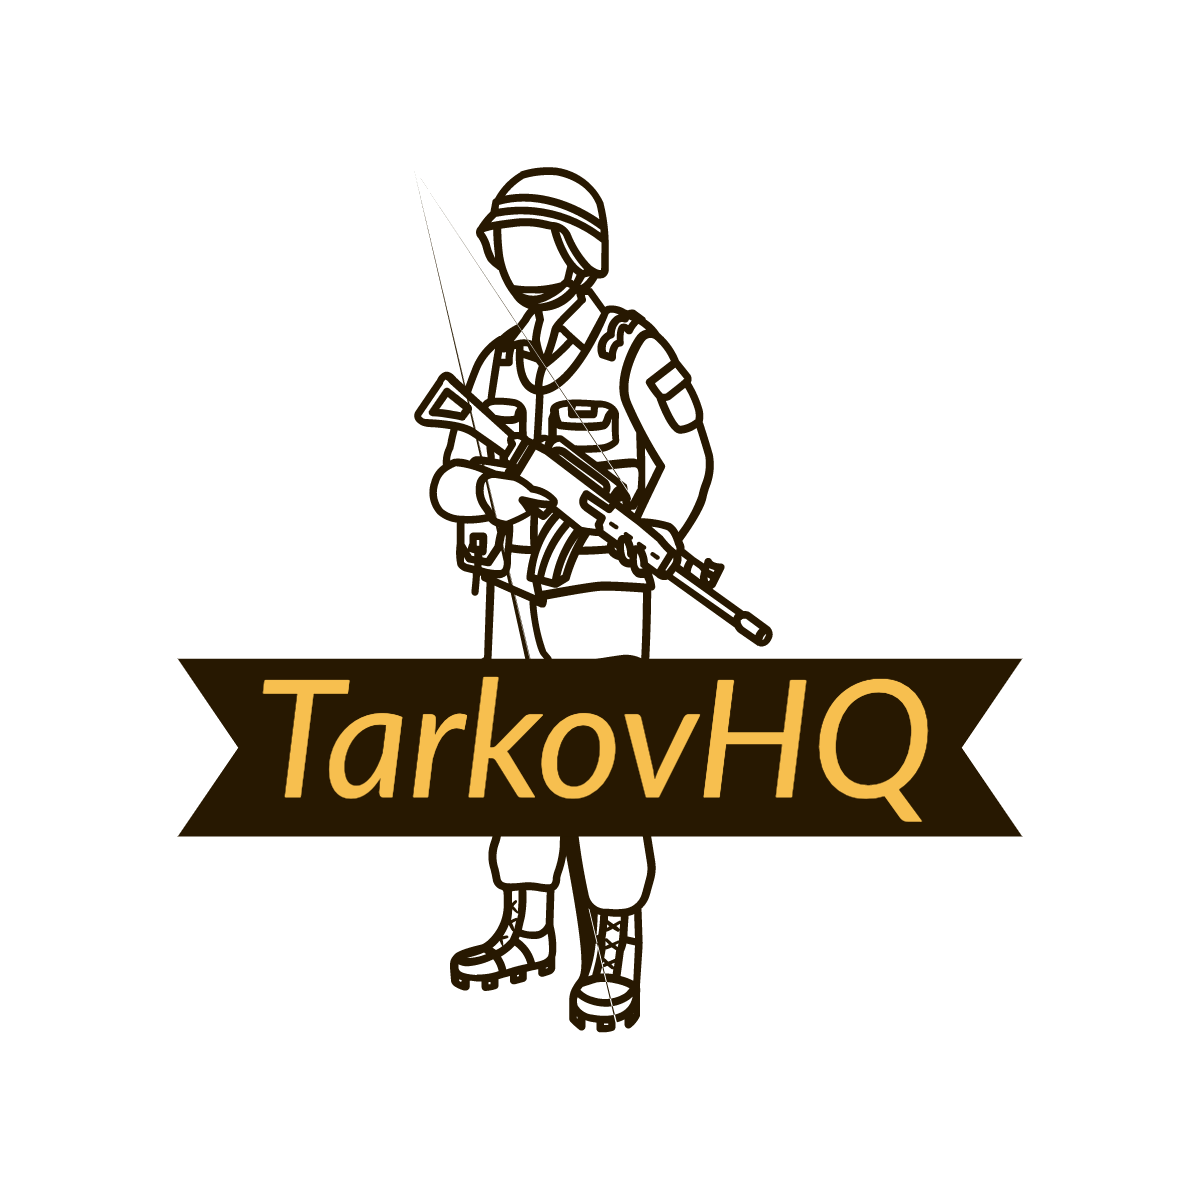 TarkovHQ